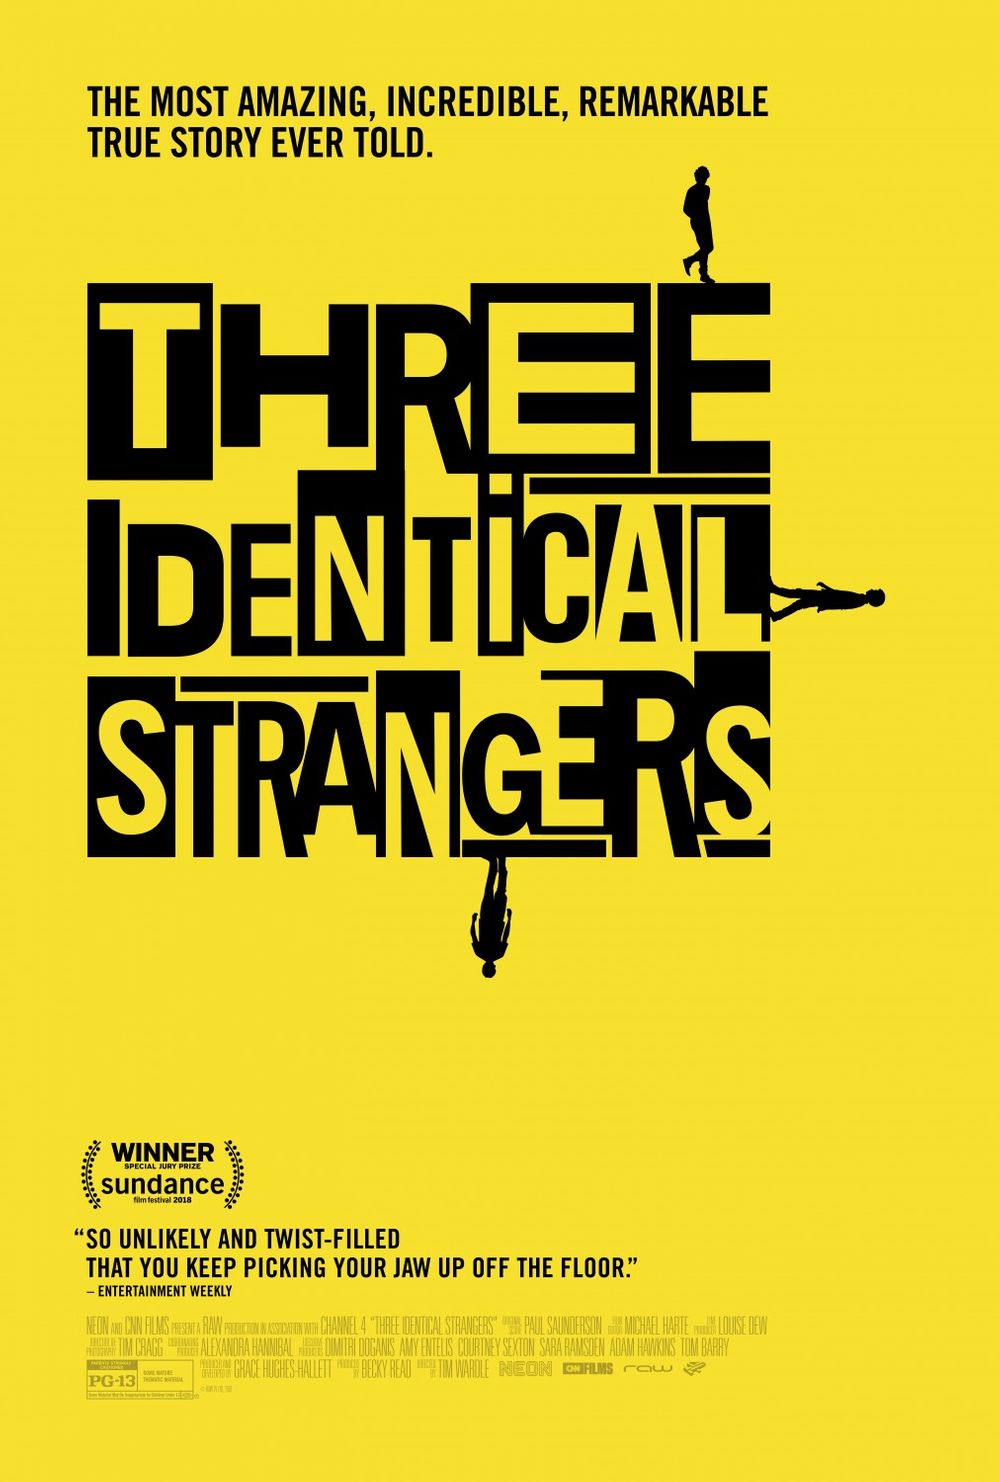 The Strangers (film), The Strangers Wiki